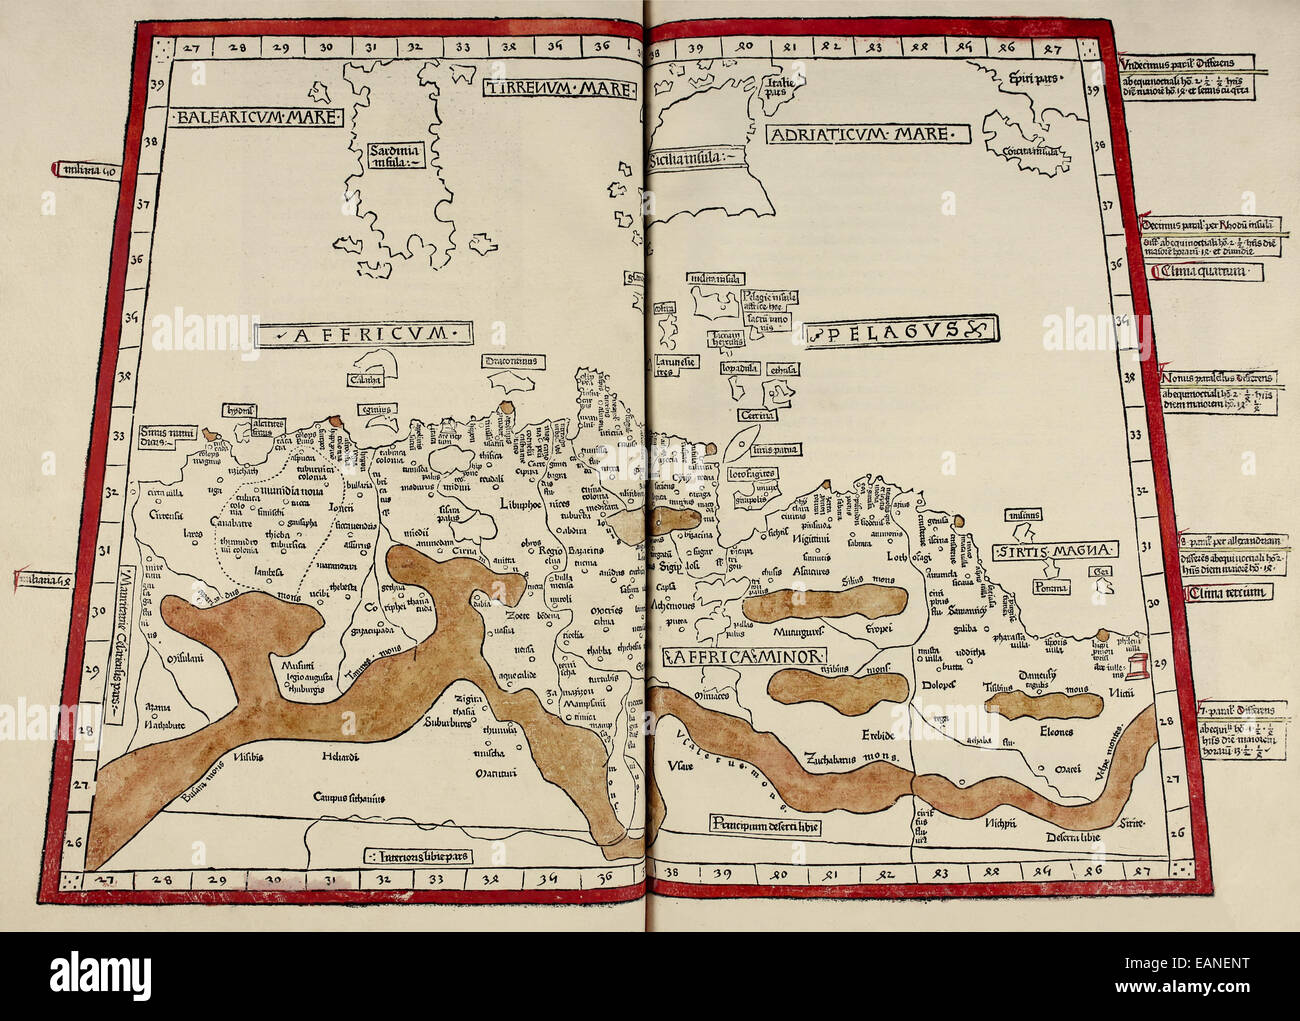 Karte von Nordafrika aus "Cosmographia" von Claudius Ptolemäus (Ptolemaeus) (90-168AD). Siehe Beschreibung für mehr Informationen. Stockfoto